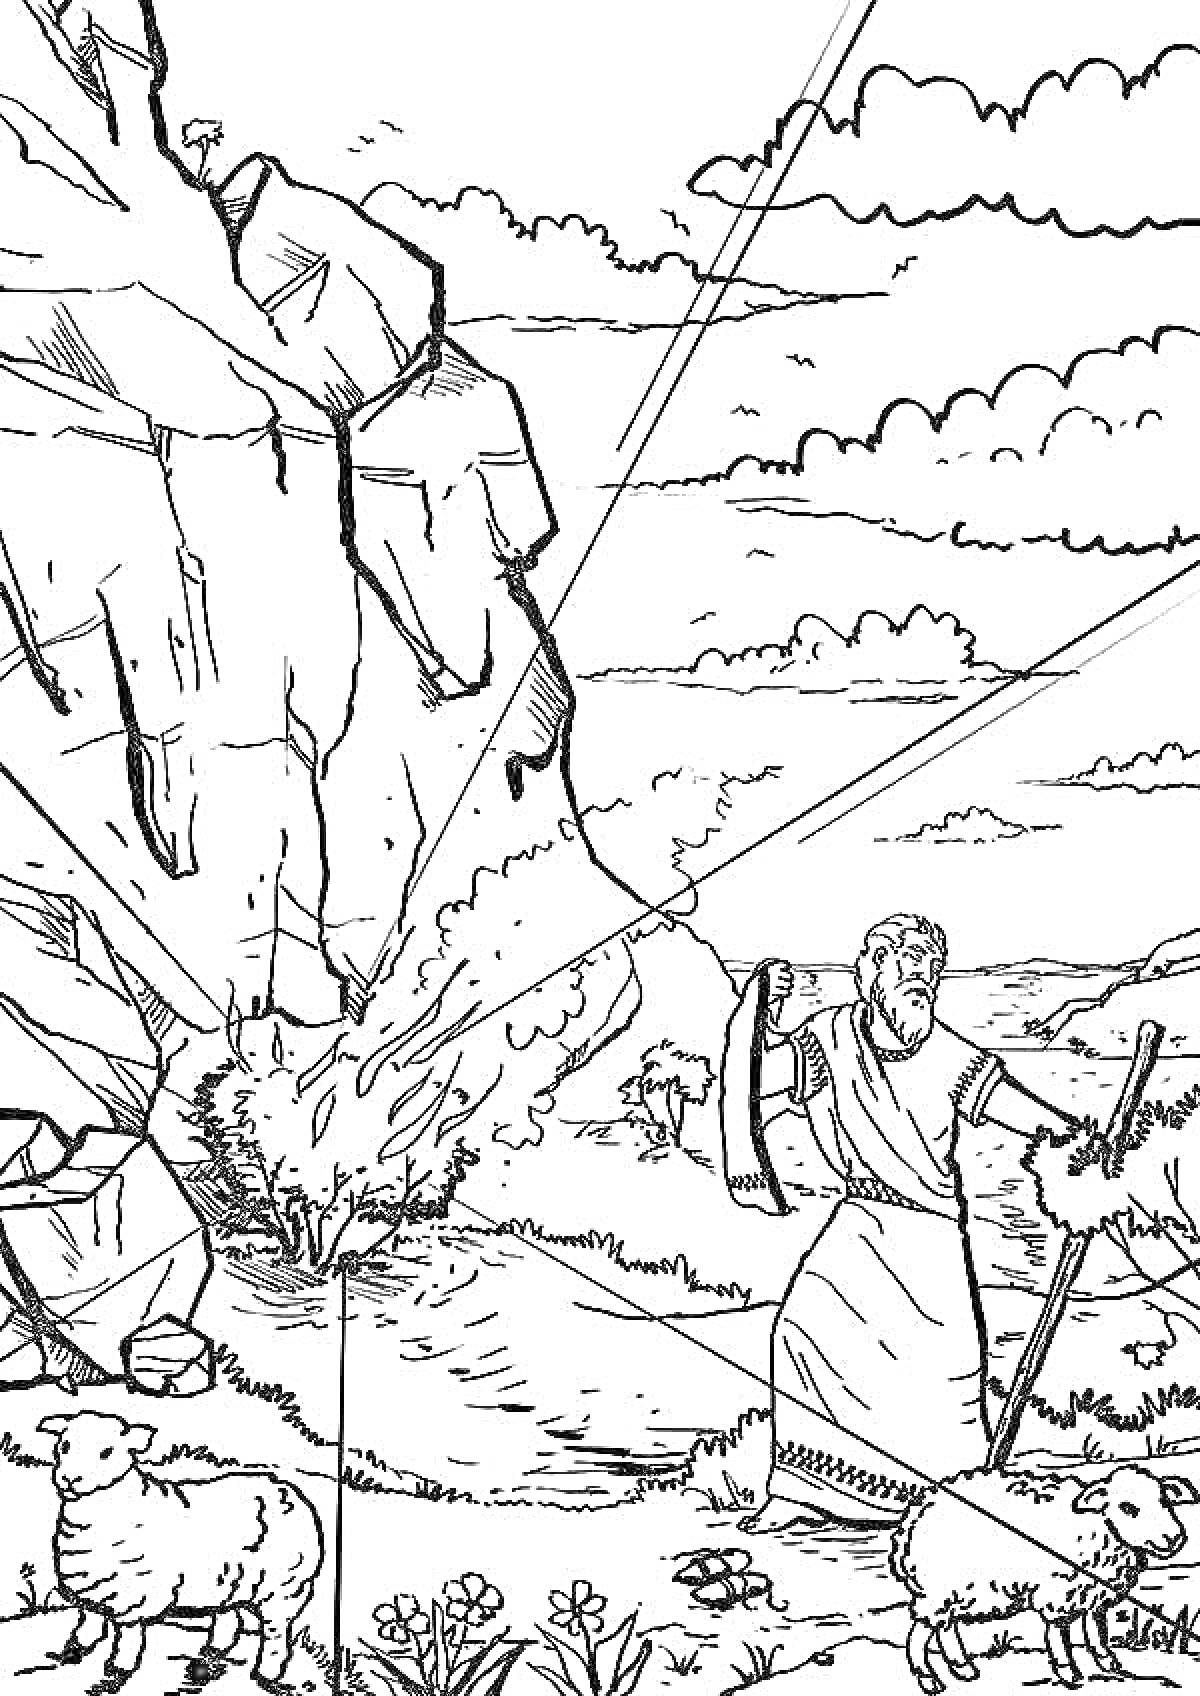 Раскраска Неопалимая купина с Моисеем около горящего куста, несколько овец вокруг